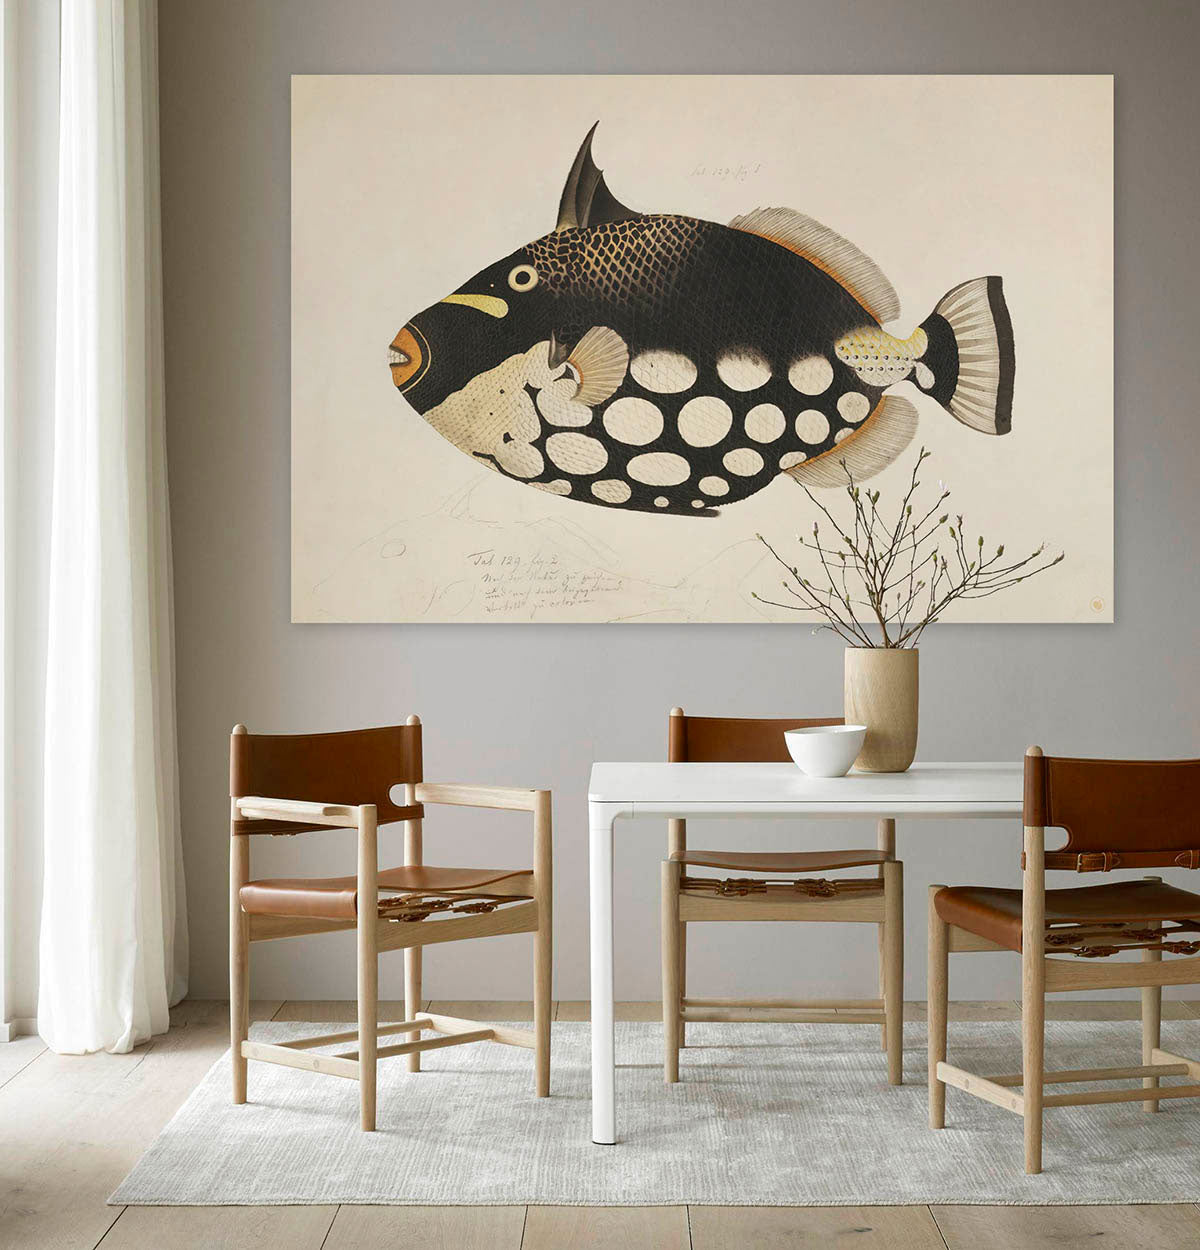 Schilderij met een zwart bruine vis tegen een muur met stoelen en een tafel er voor